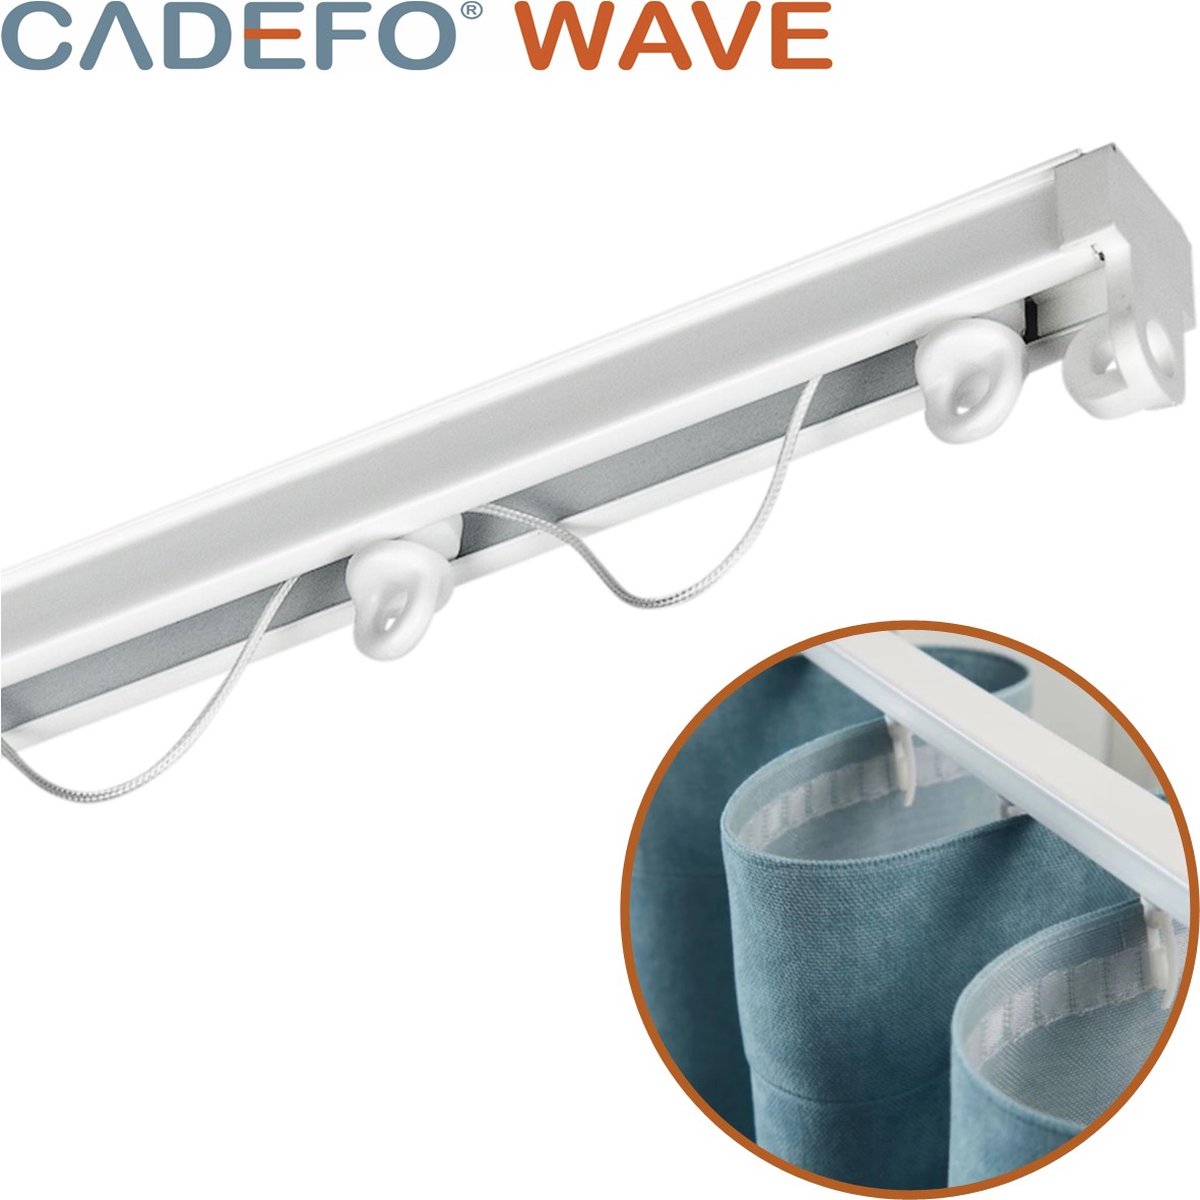 CADEFO WAVE (351 - 400 cm) Gordijnrails - Compleet op maat! - UIT 1 STUK - Leverbaar tot 6 meter - Plafondbevestiging - Lengte 365 cm